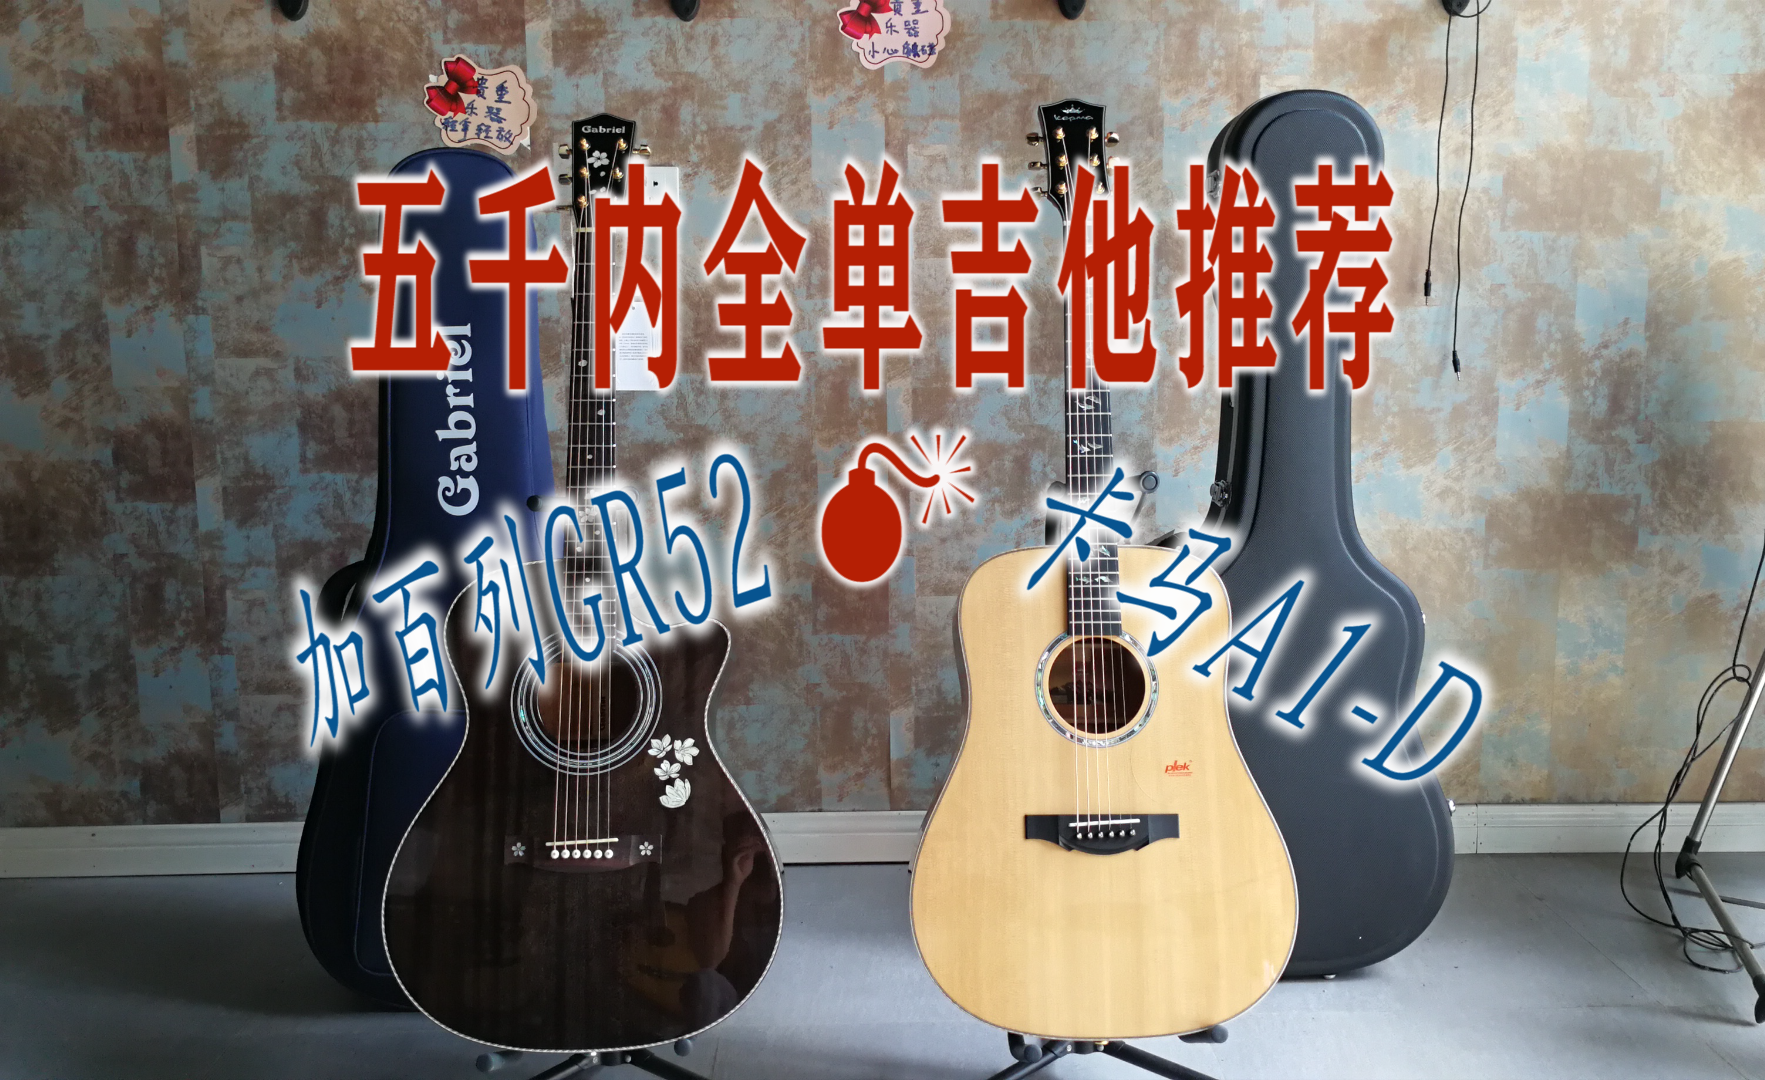 卡马f1(pk)雅马哈fg830对比测评,两千元推荐性价比高的吉他有哪些?